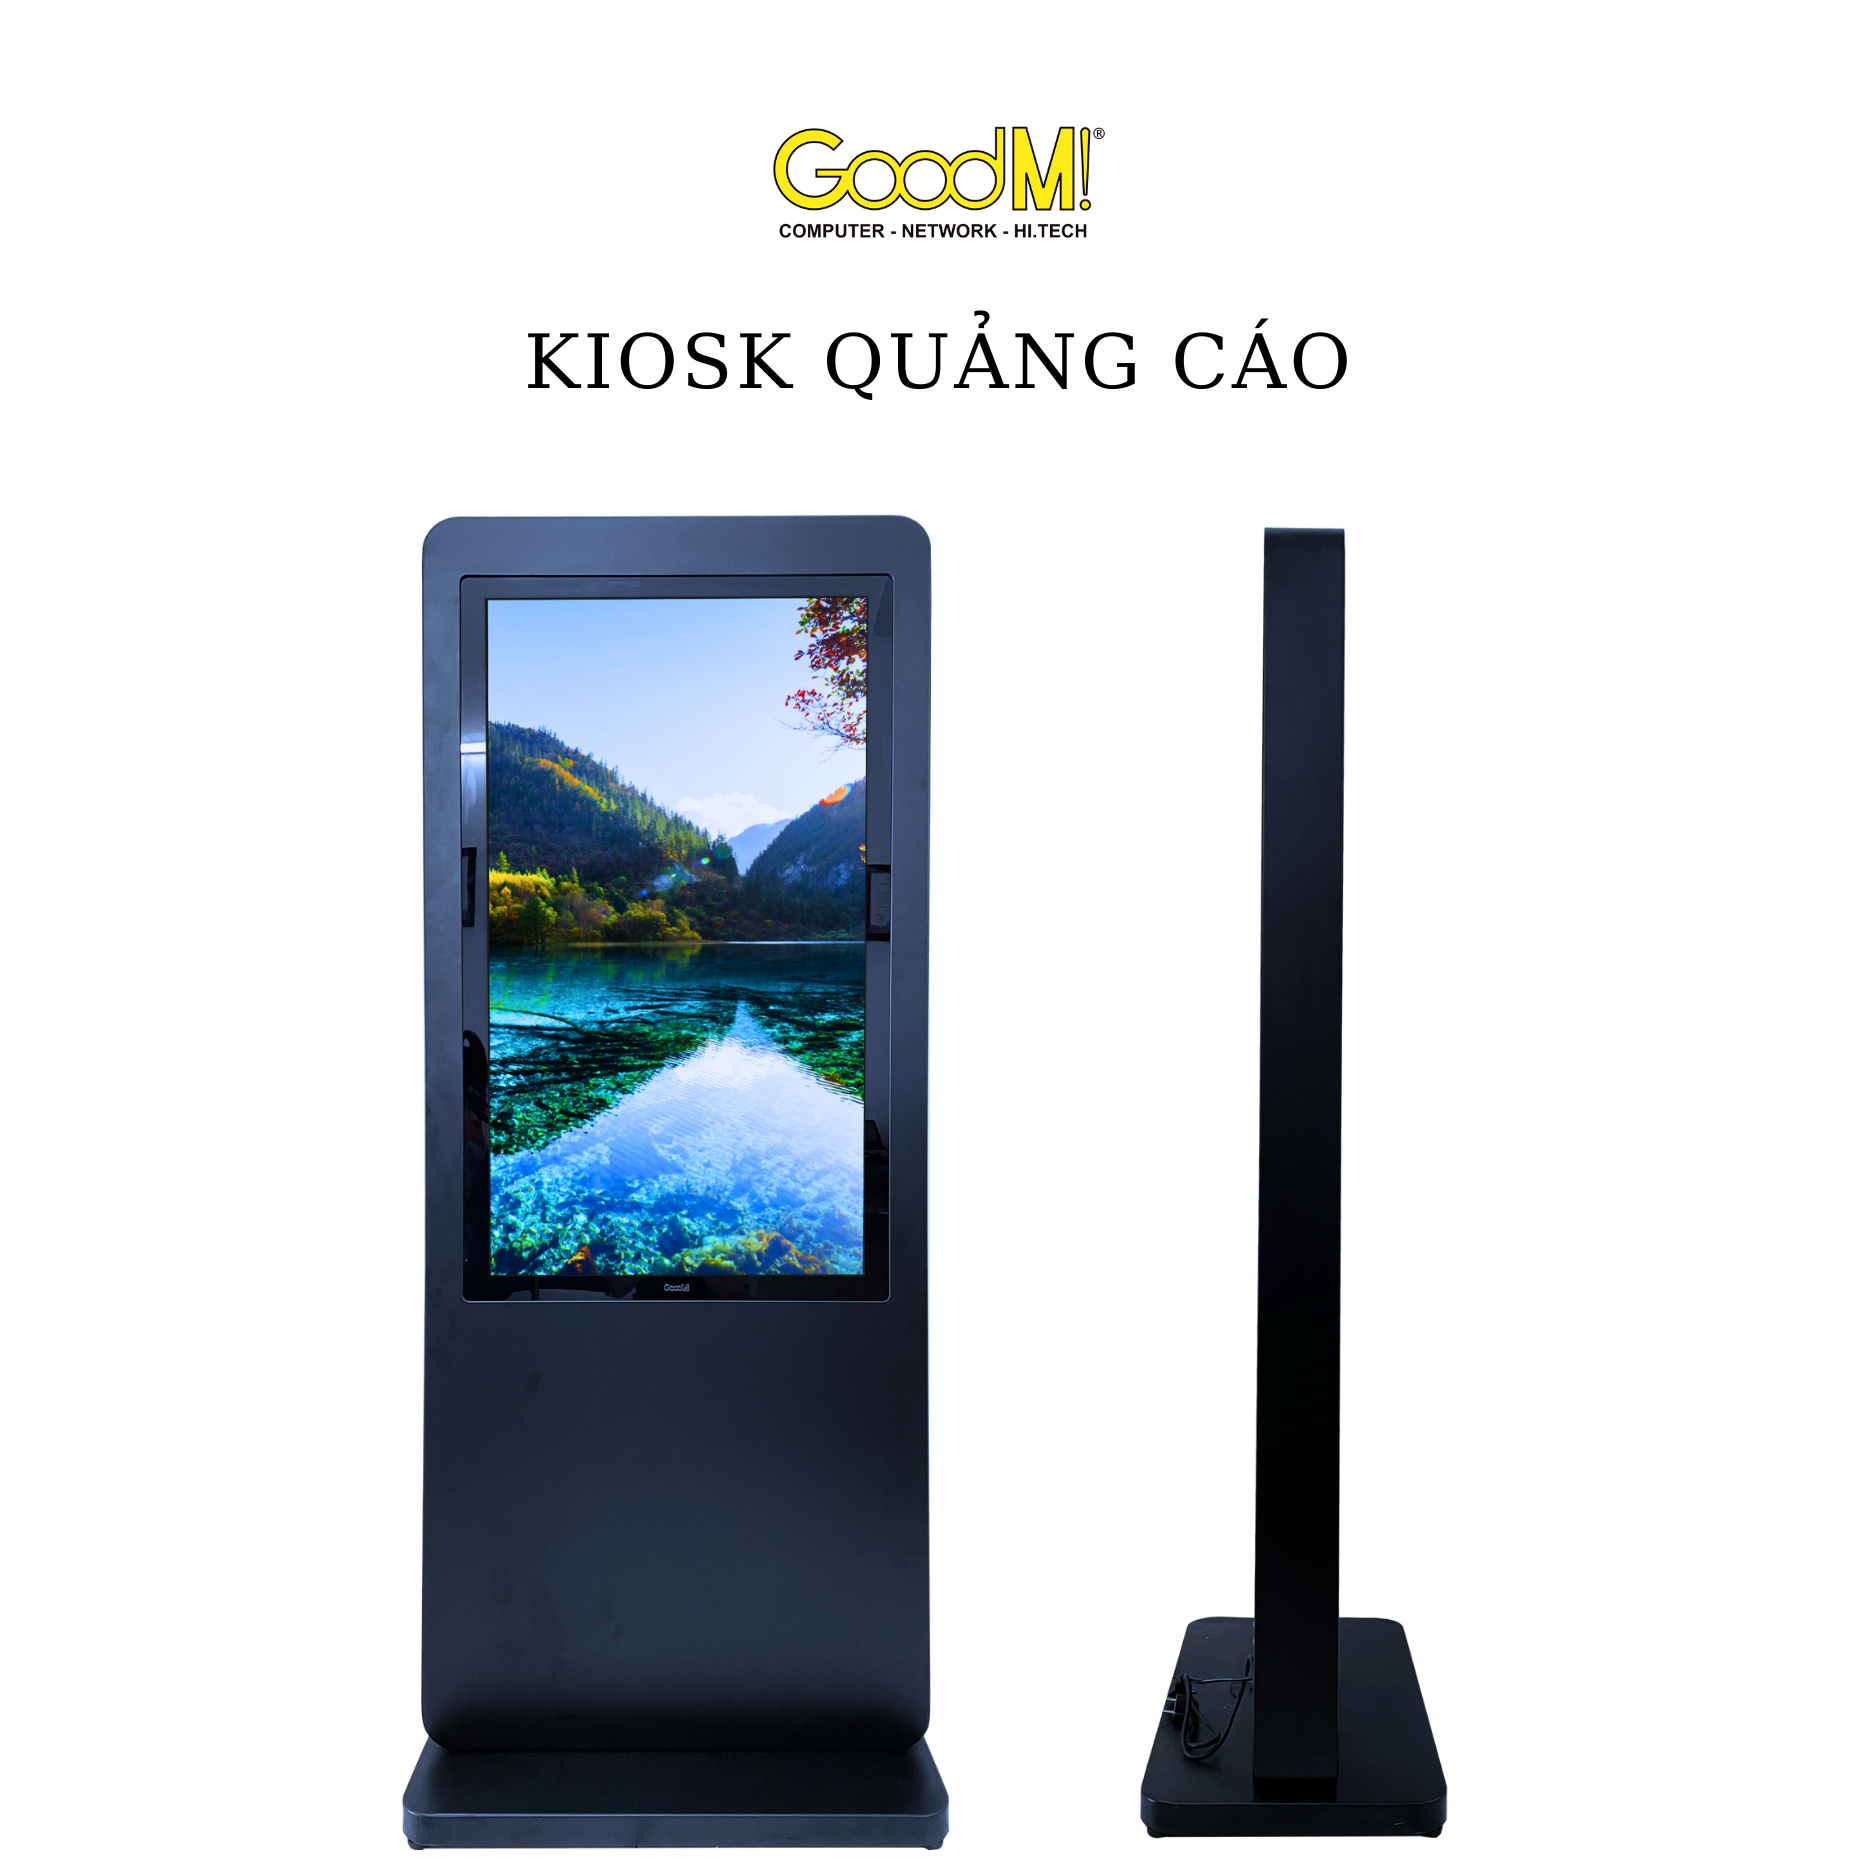  Kiosk Quảng Cáo Cảm Ứng GoodM G-KIOSK 323S-SB 